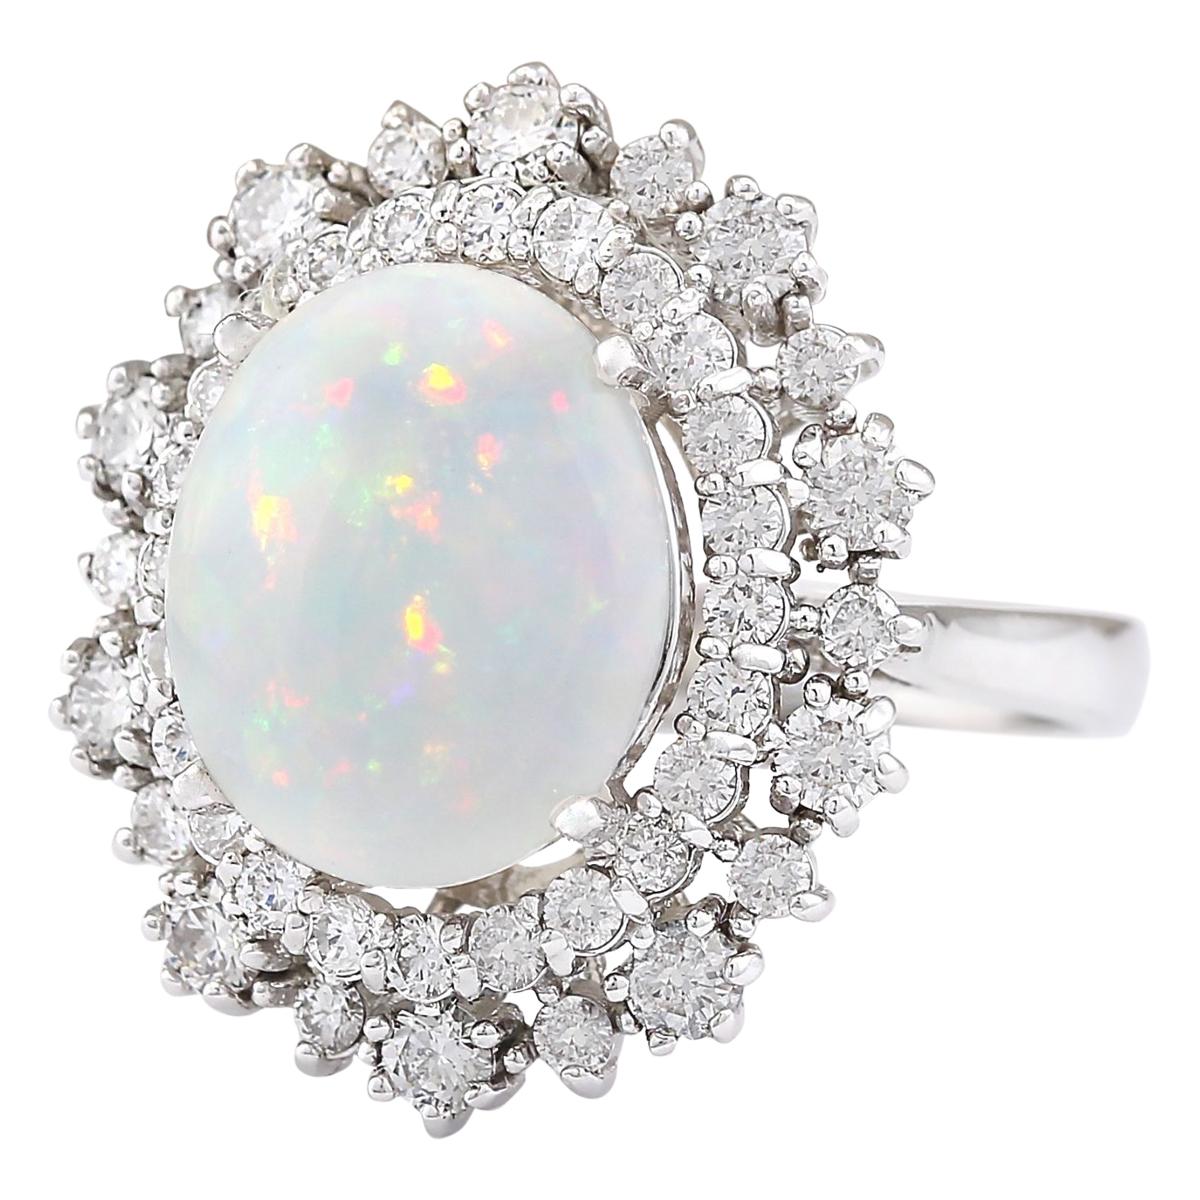 4.20 Carat Natural Opal 14 Karat White Gold Diamond Ring
Stamped: 14K White Gold
Total Ring Weight: 6.5 Grams
Total Natural Opal Weight is 3.05 Carat (Measures: 12.00x10.00 mm)
Color: Multicolor
Total Natural Diamond Weight is 1.15 Carat
Color: F-G,